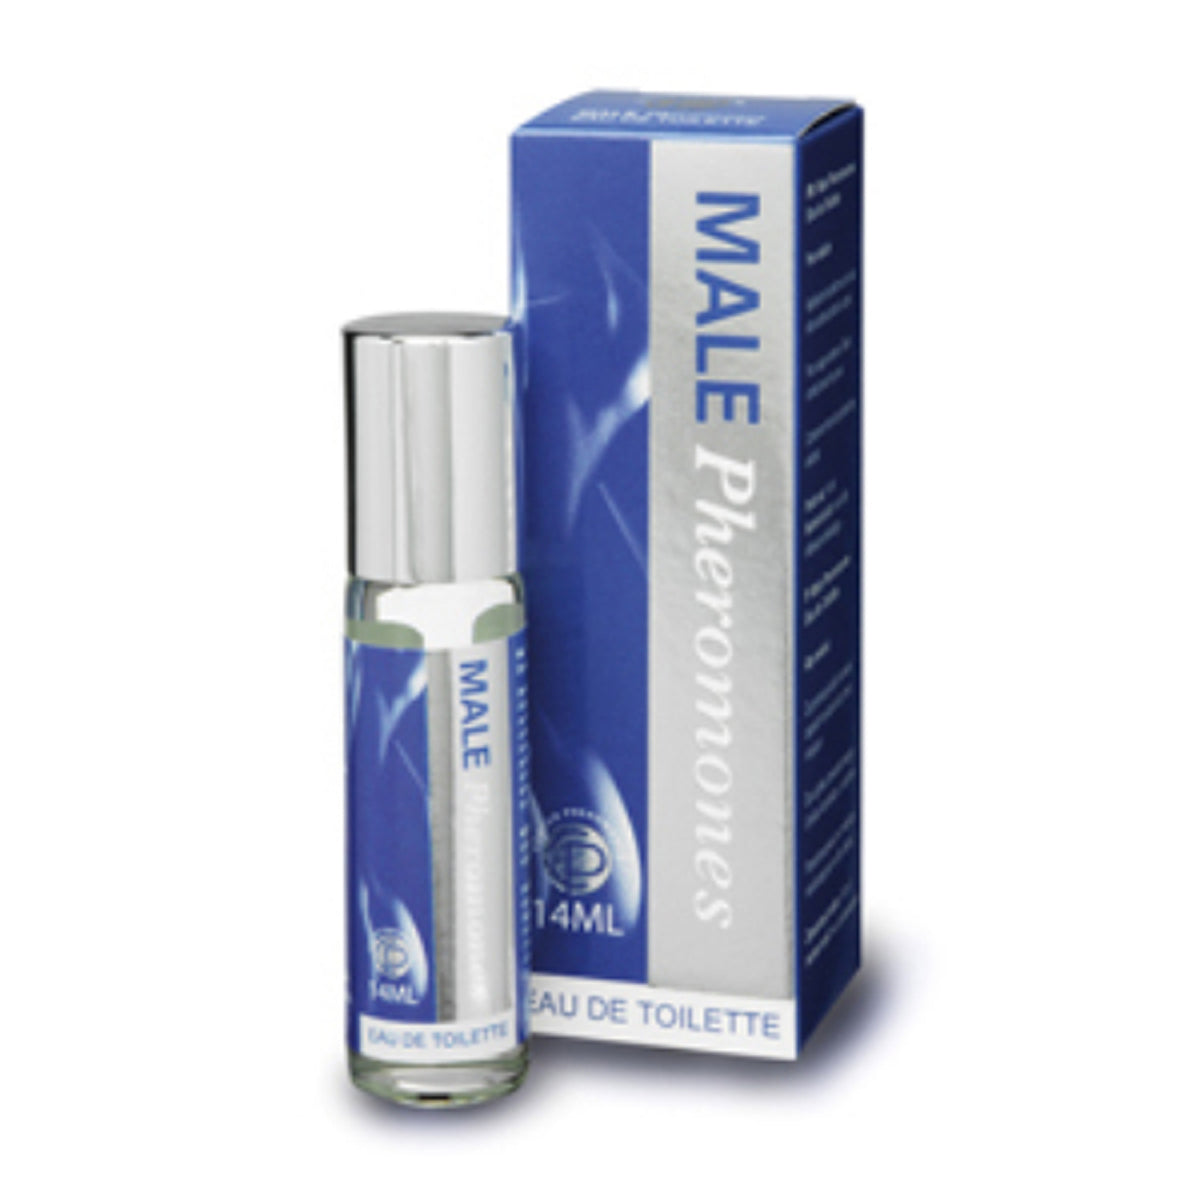 Onweerstaanbare feromonenparfum voor mannen, ontwikkeld door Cobeco Pharma en te koop bij Flavourez.